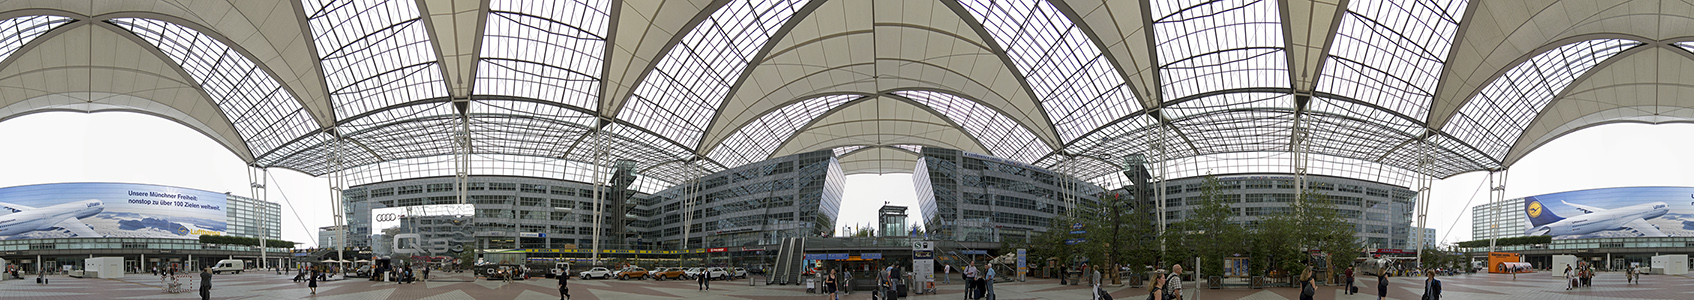 Flughafen Franz Josef Strauß: Munich Airport Center (MAC) München